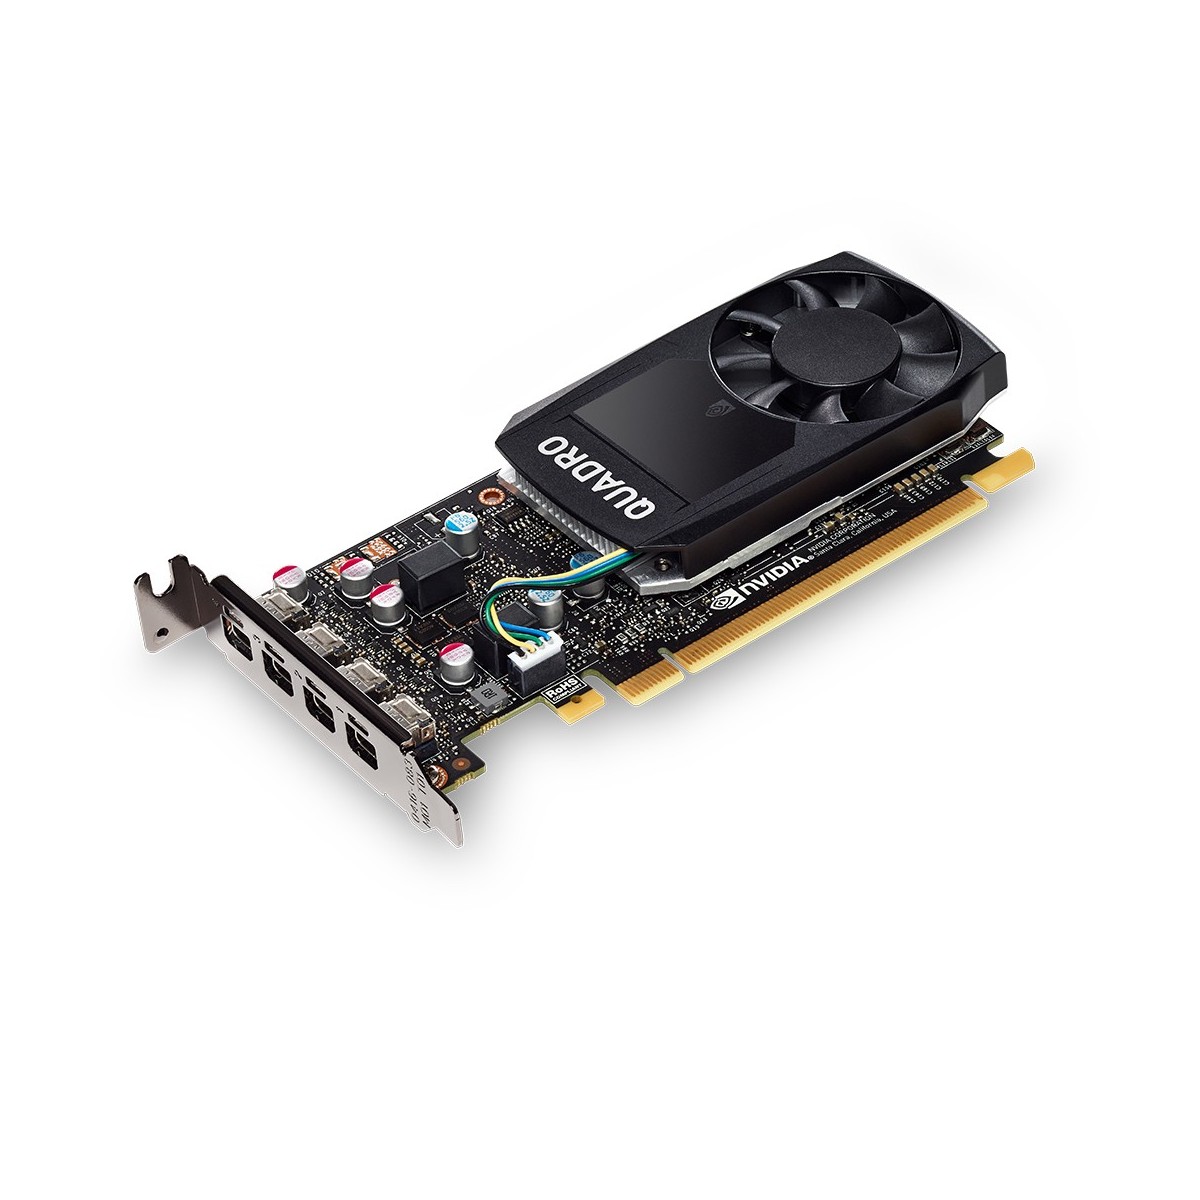 PNY VCQP600DVI-PB - Quadro P600 - 2 GB - GDDR5 - 128 bit - 5120 x 2880 pixels - PCI Express 3.0